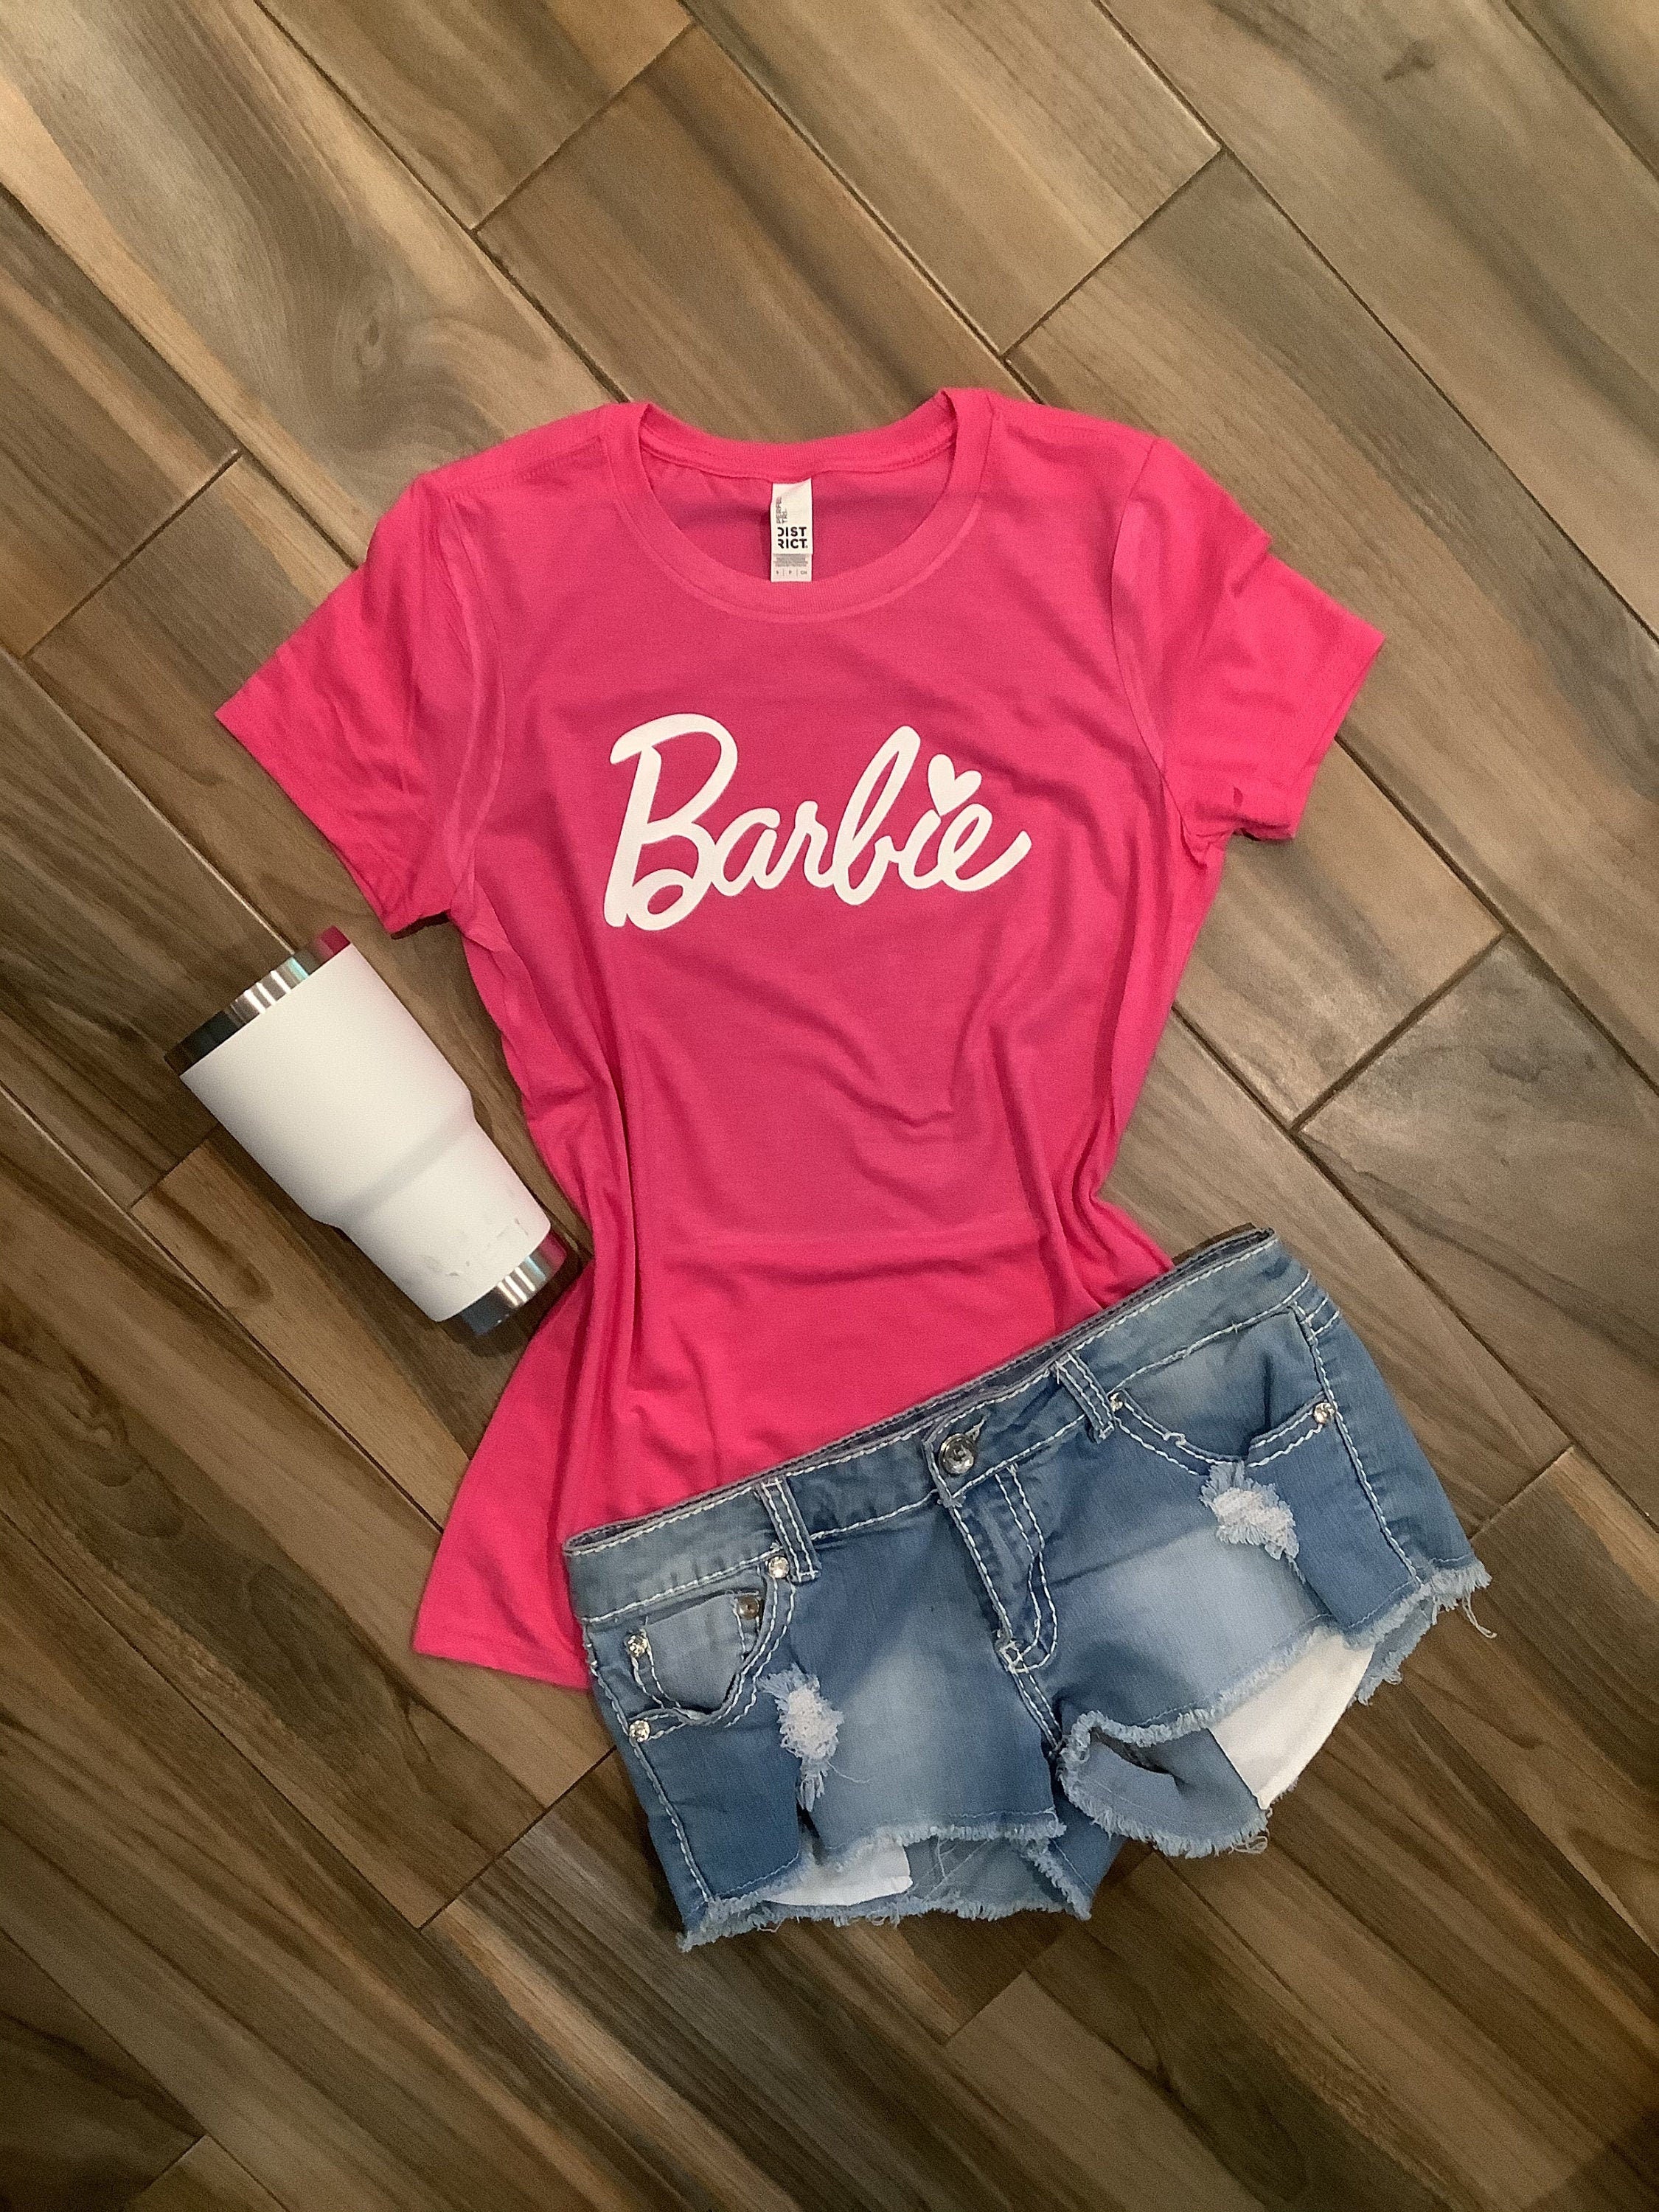 Barbie Jersey Shirt Barbie Baseball Jersey Barbie T Shirt Womens